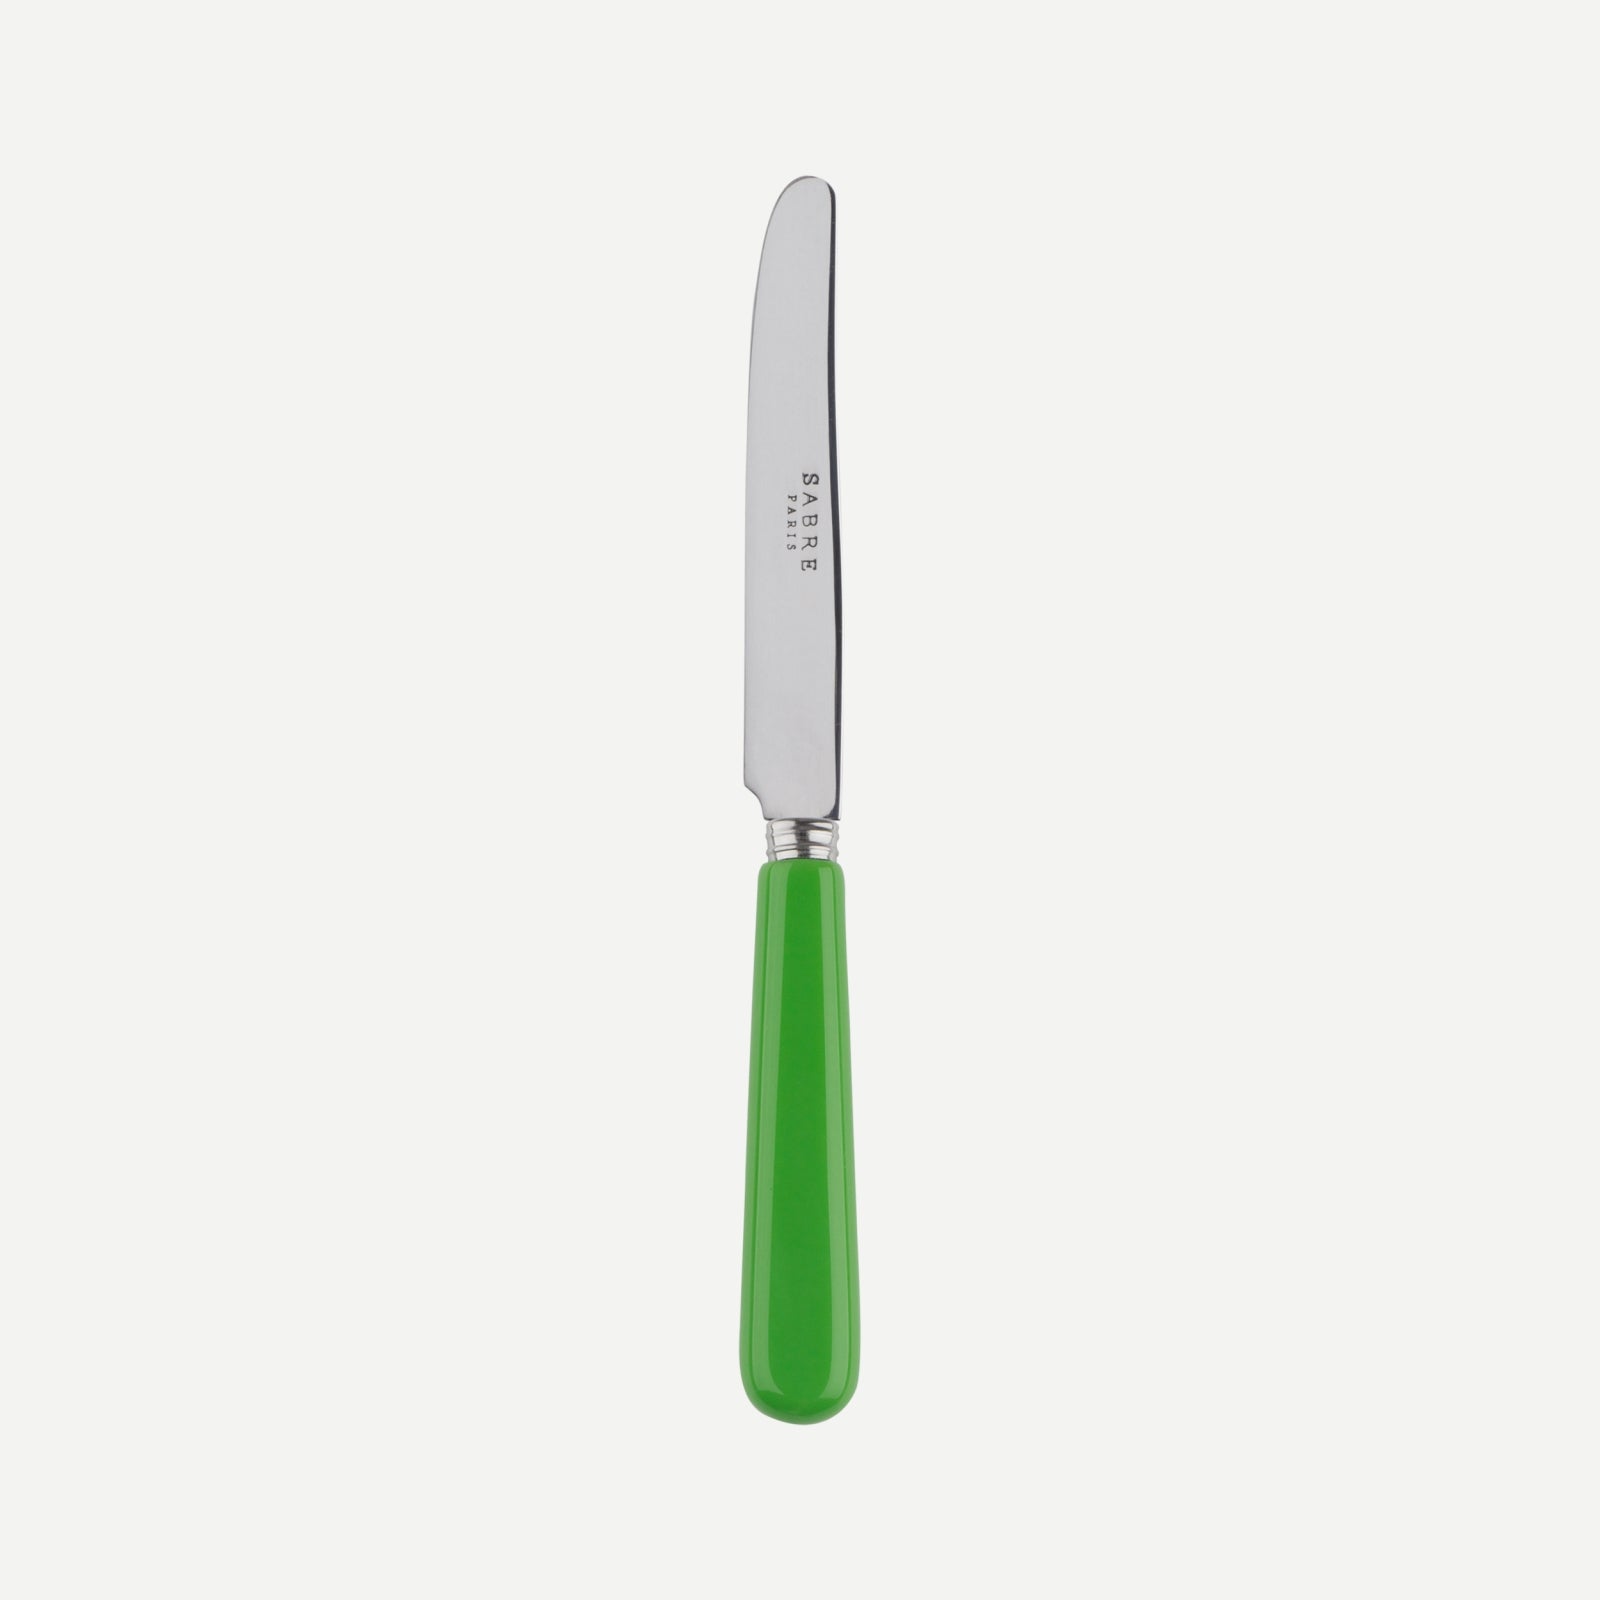 Breakfast knife - Pop unis - Streaming green